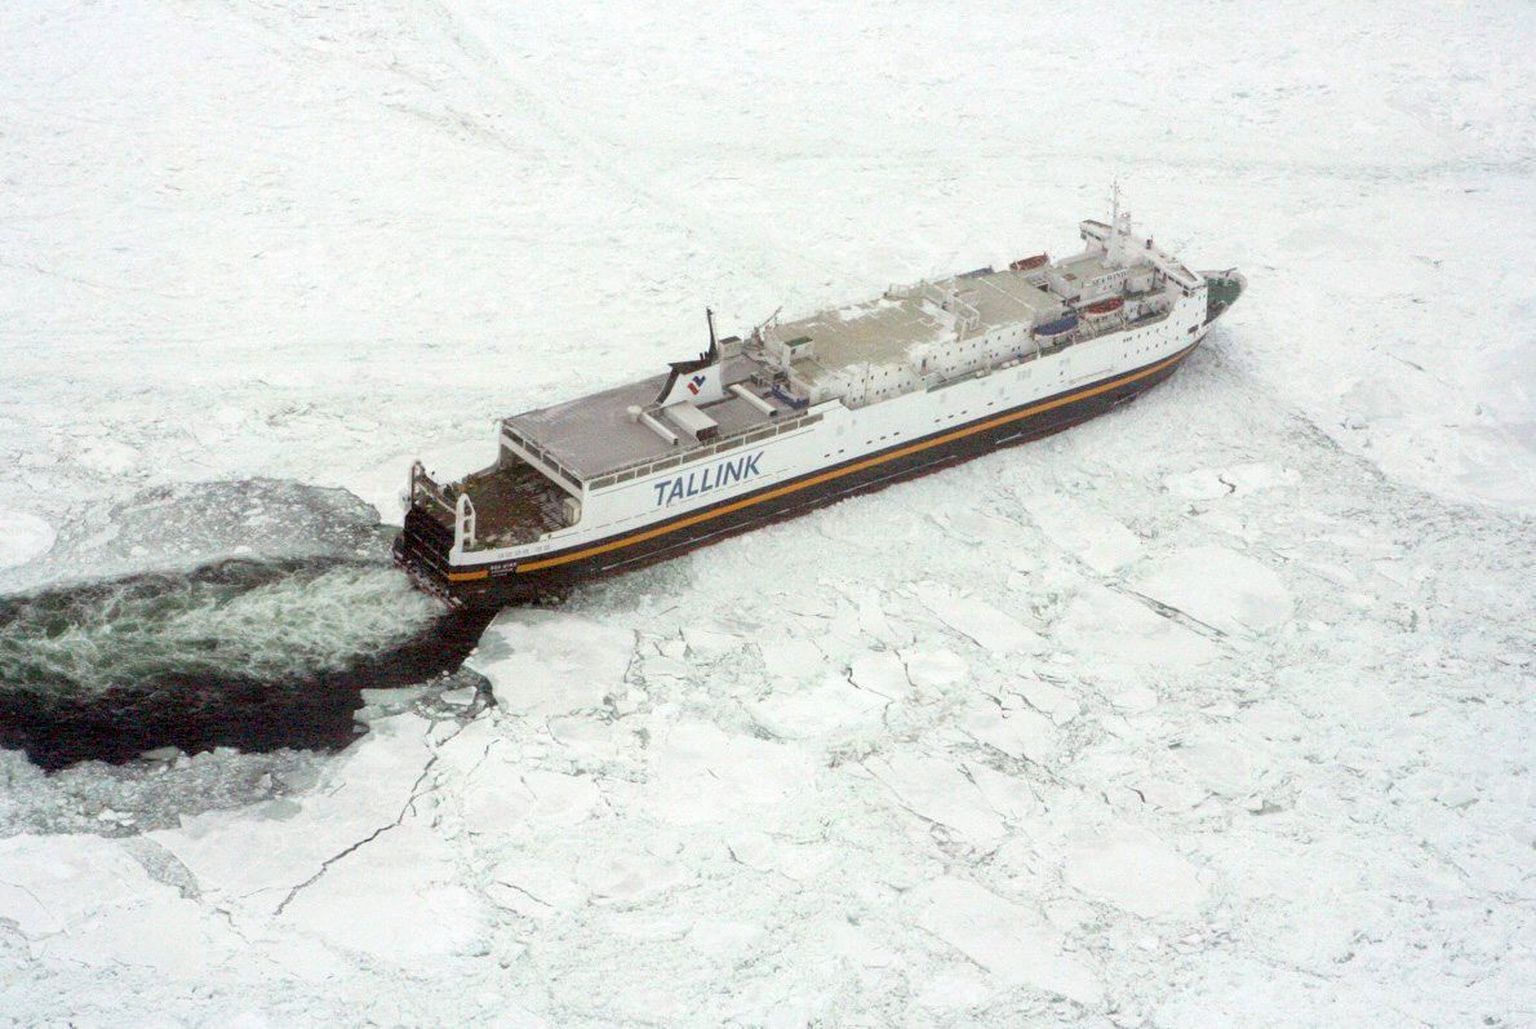 Tallinki laev Botnia lahel jääs teed murdmas. Soome riik küsis tallinkilt ja teistelt reederitelt ülemäära maksu, põhjendades seda suuremate kuludega mh jäälõhkumisele.